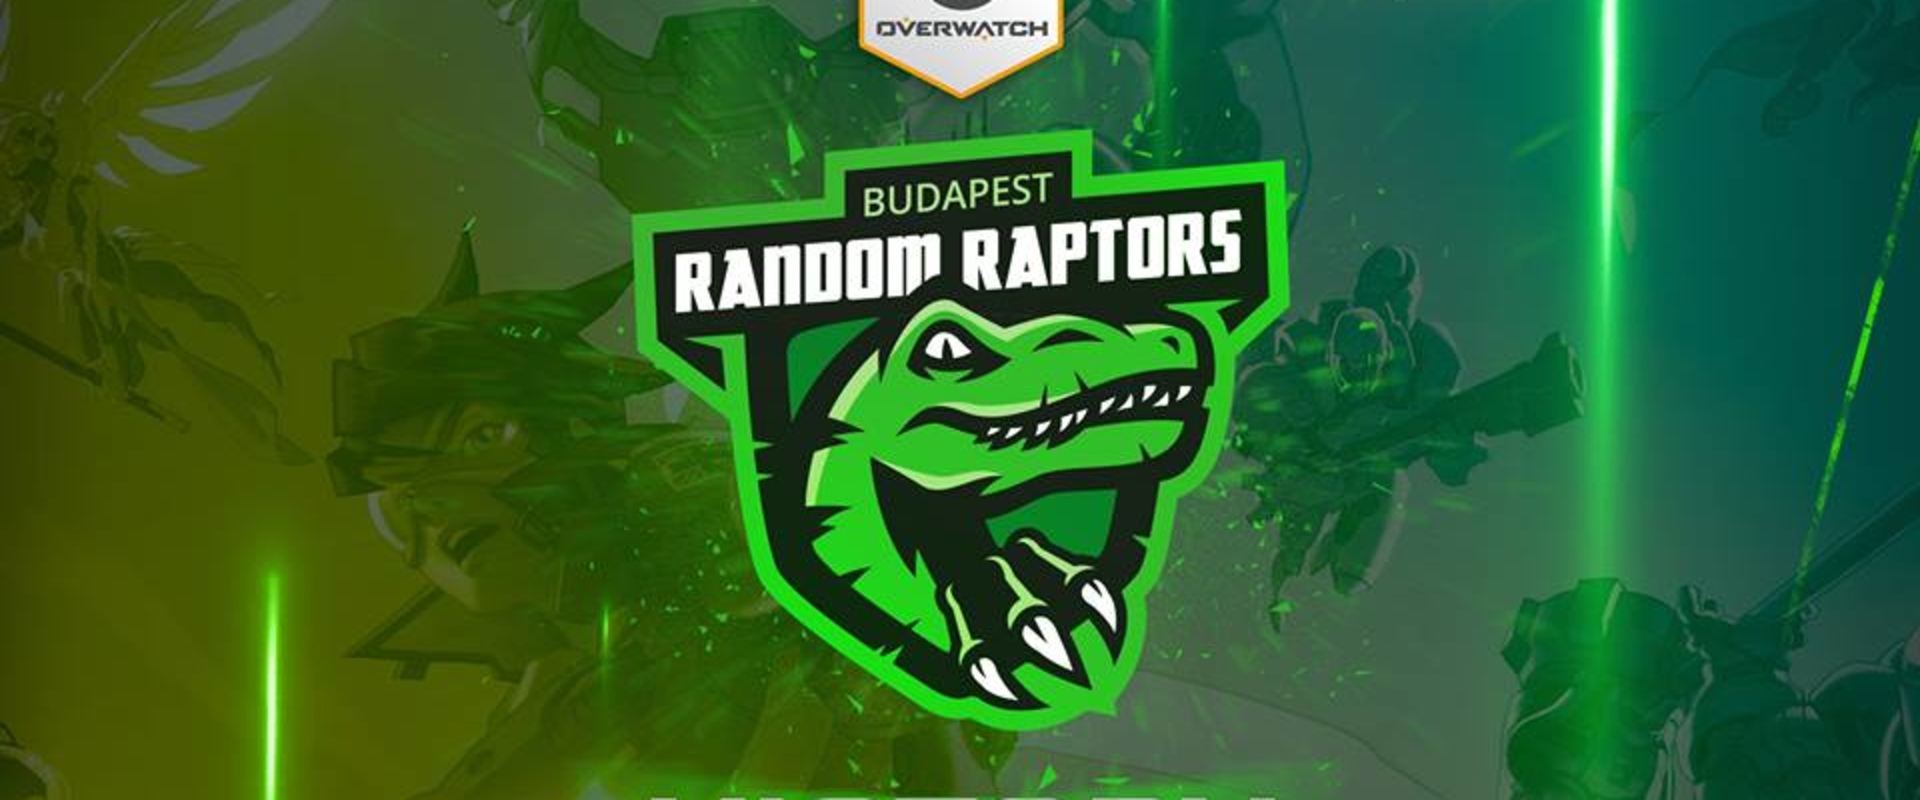 Dupla győzelemmel indítottak a budapesti Random Raptorok